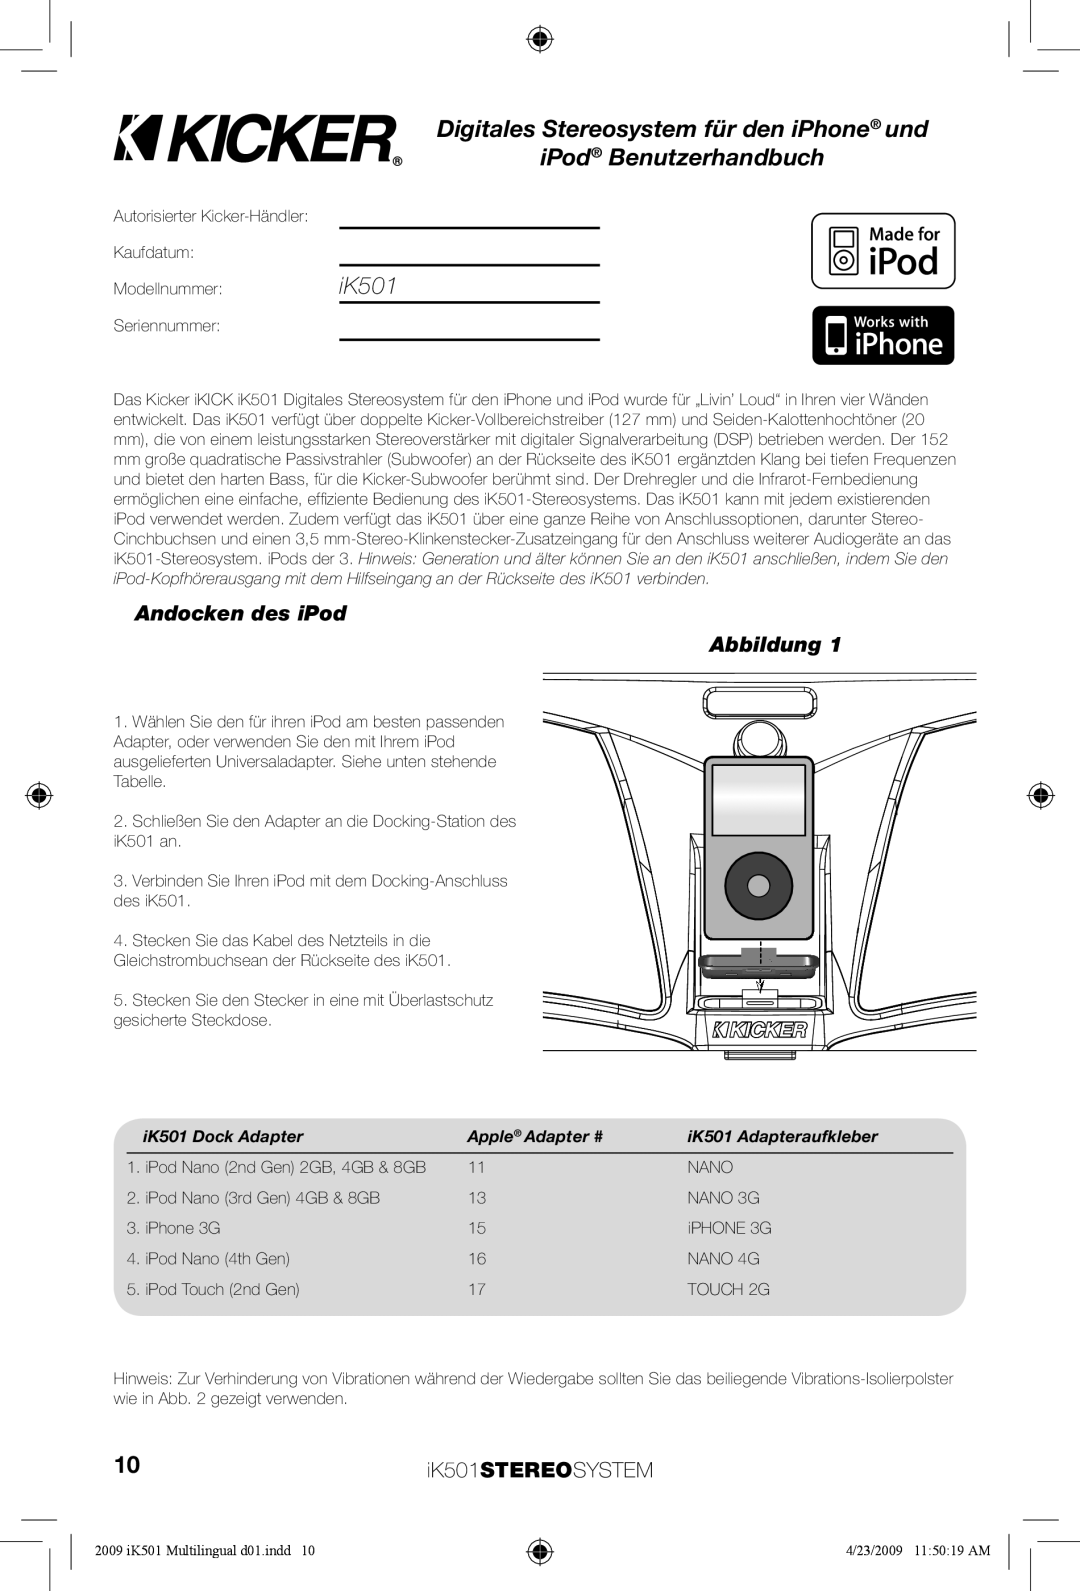 Kicker iK501 manual Digitales Stereosystem für den iPhone und, iPod Benutzerhandbuch, Andocken des iPod Abbildung 